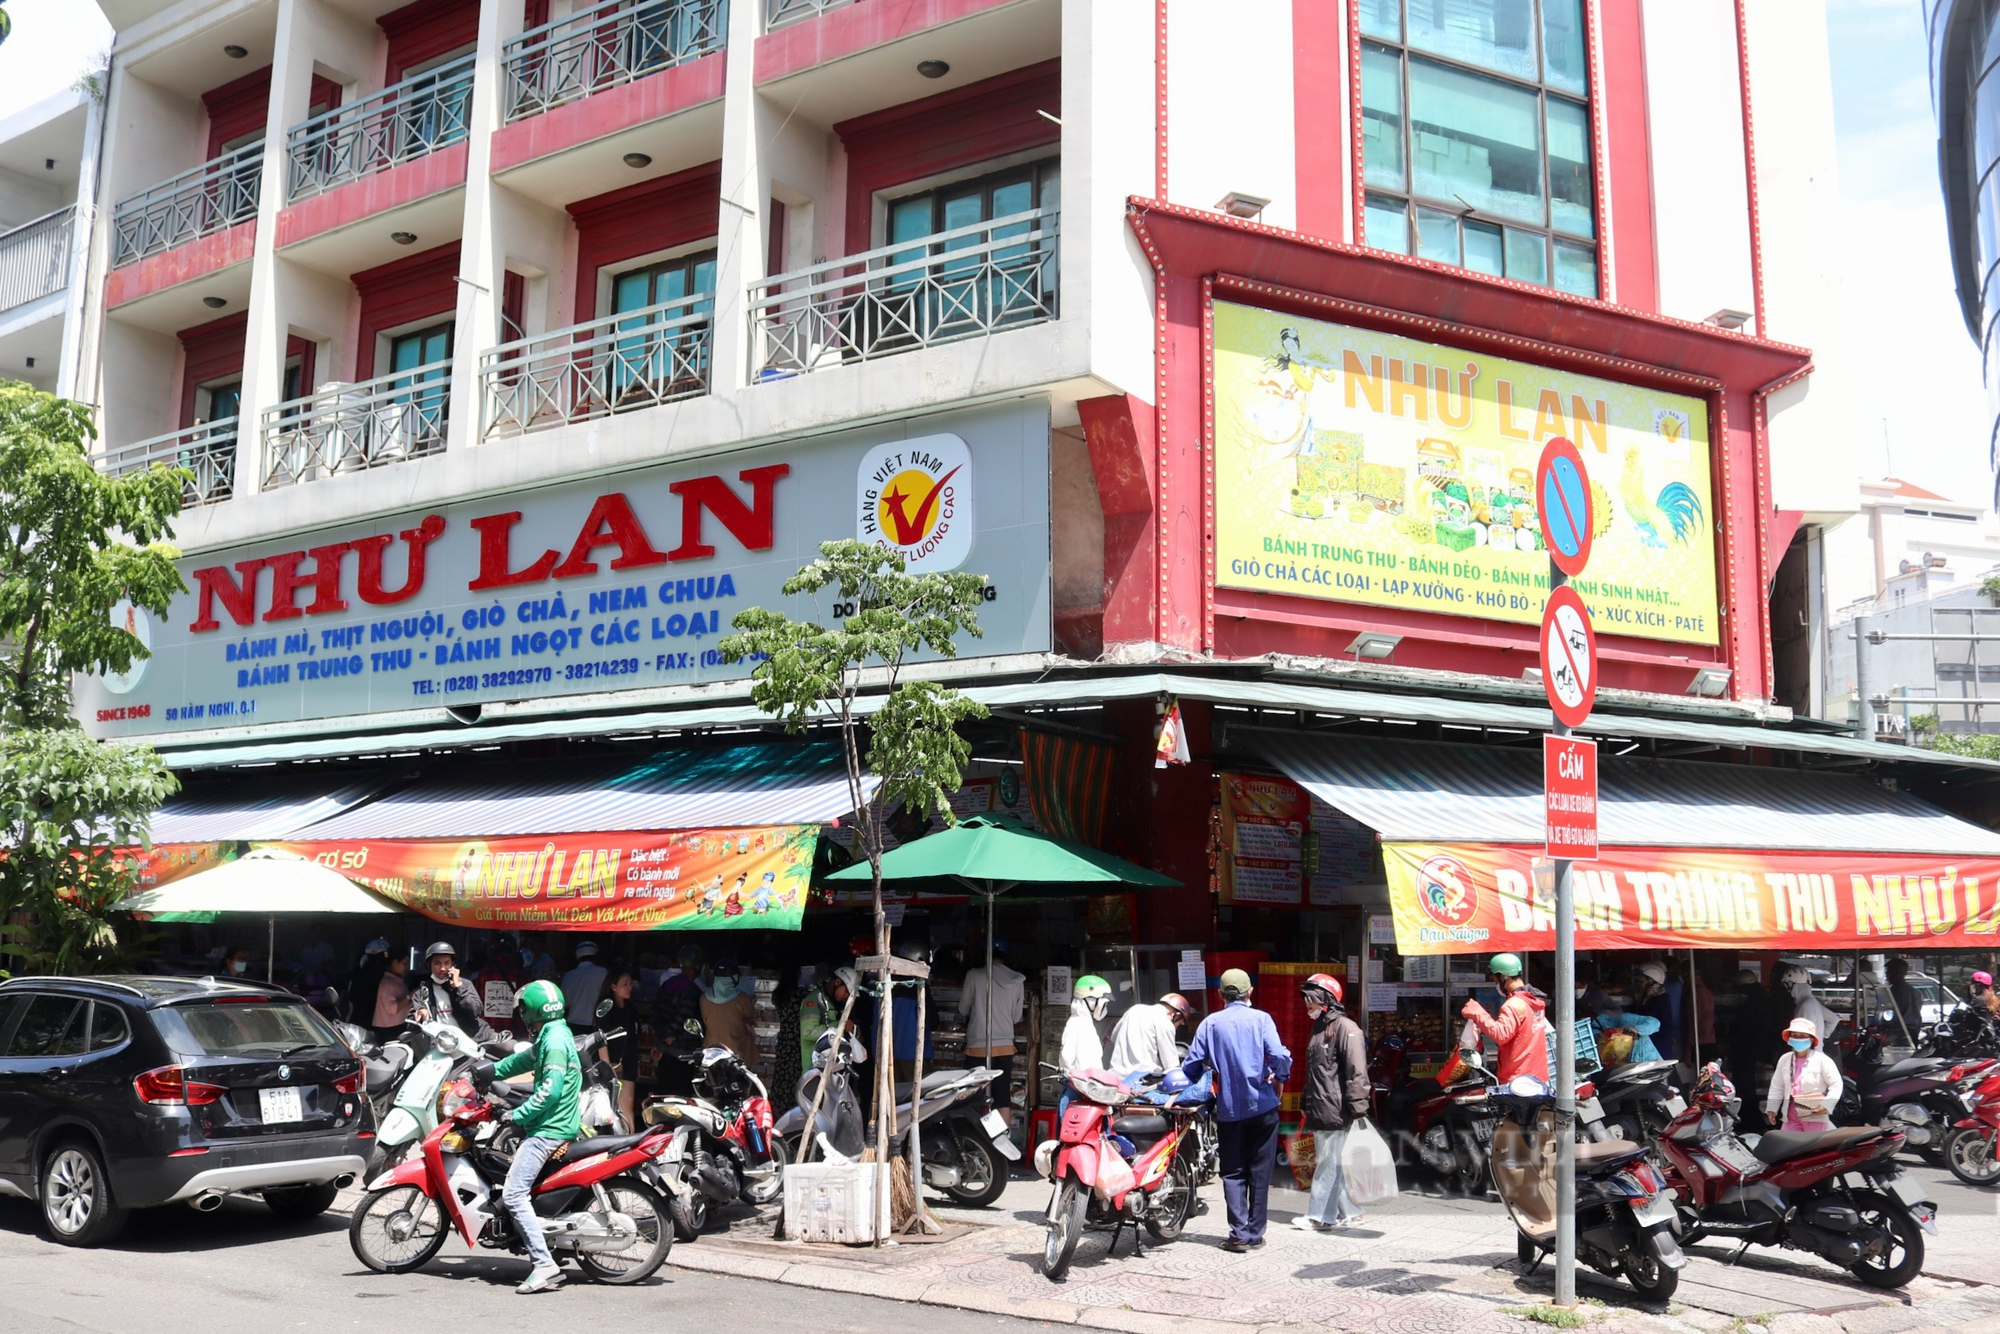 Giữa lúc bánh trung thu đại hạ giá vẫn ế, thương hiệu nổi tiếng nhất Sài Gòn đang bán buôn ra sao? - Ảnh 1.